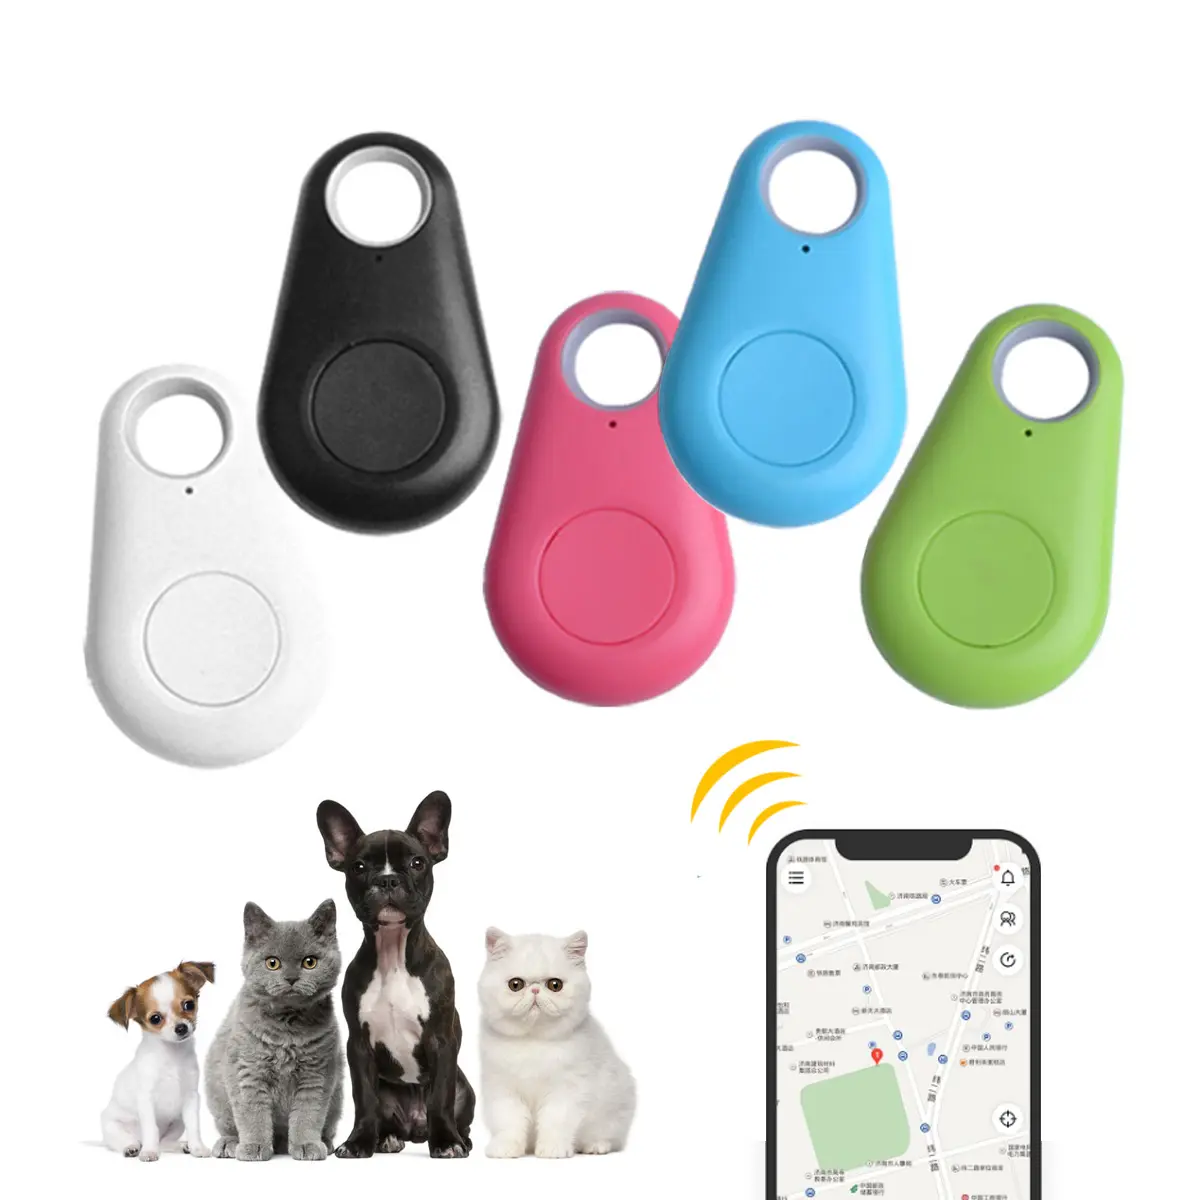 Akıllı GPS takip cihazı kablosuz Anti kayıp alarm sensörü Mini cihazı su geçirmez bulucu izleyici plastik köpek Gps evcil hayvan izleme cihazı 50 adet